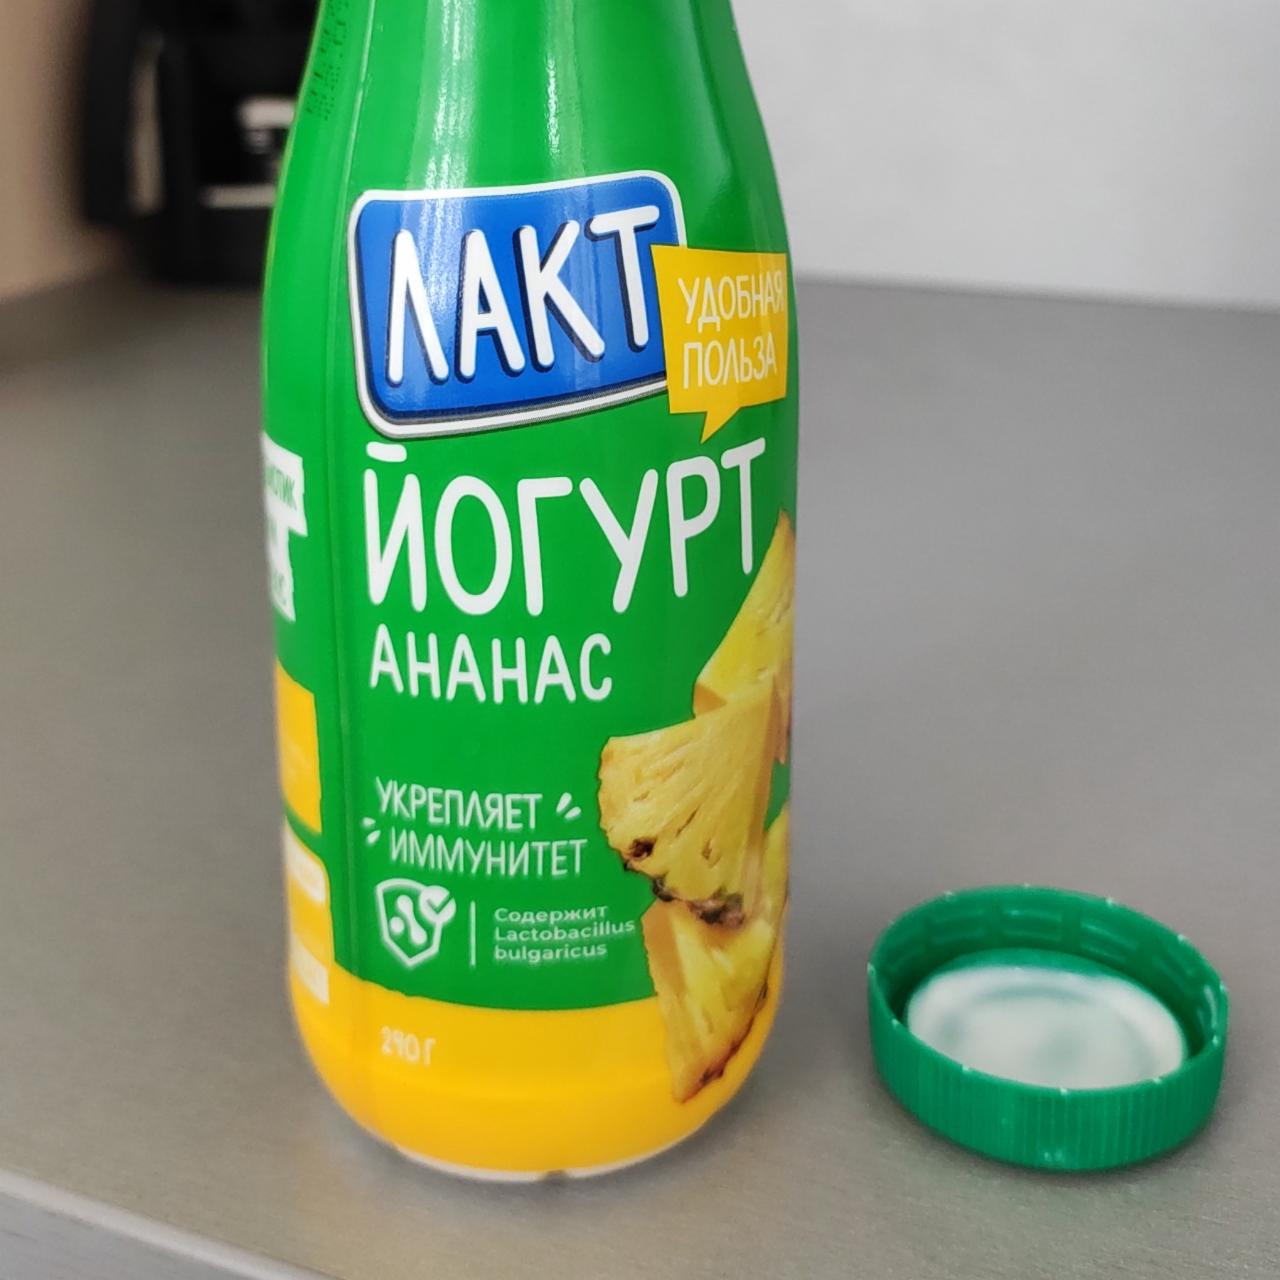 Фото - йогурт питьевой ананас Лакт